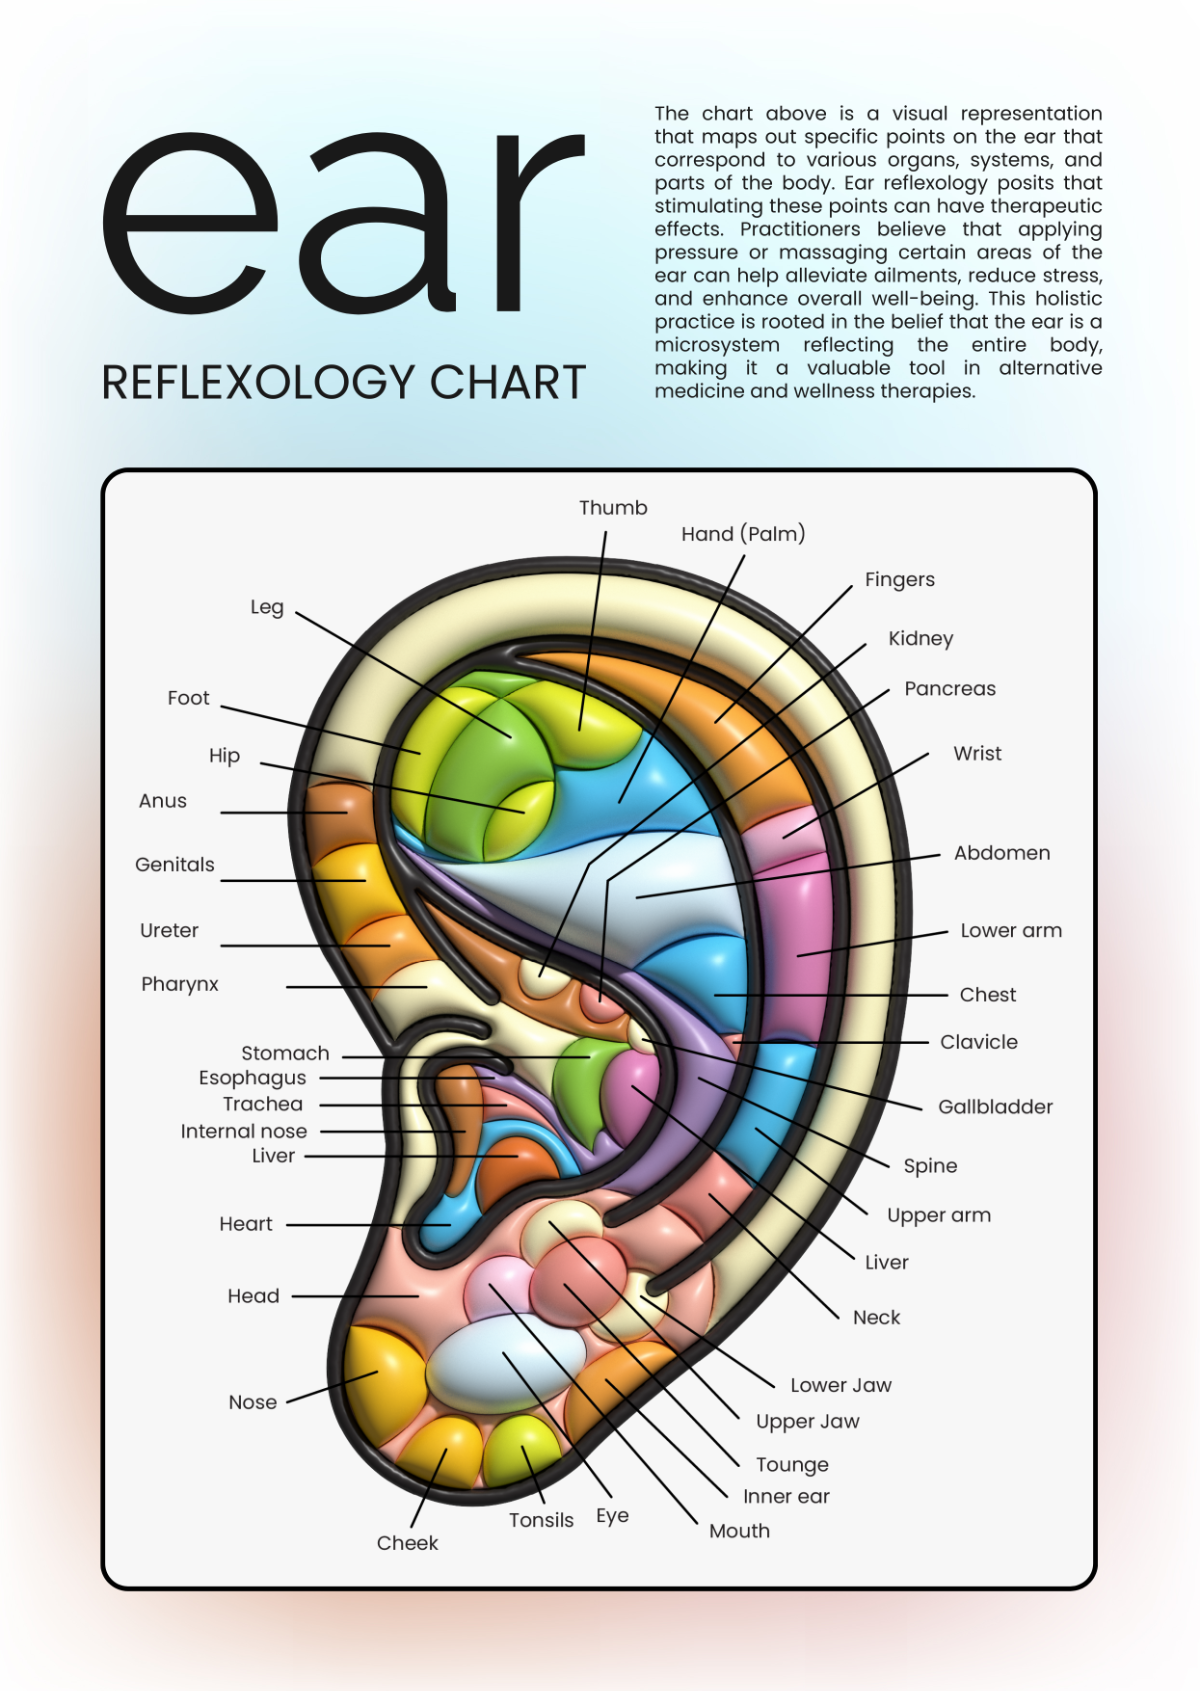 Ear Reflexology Chart